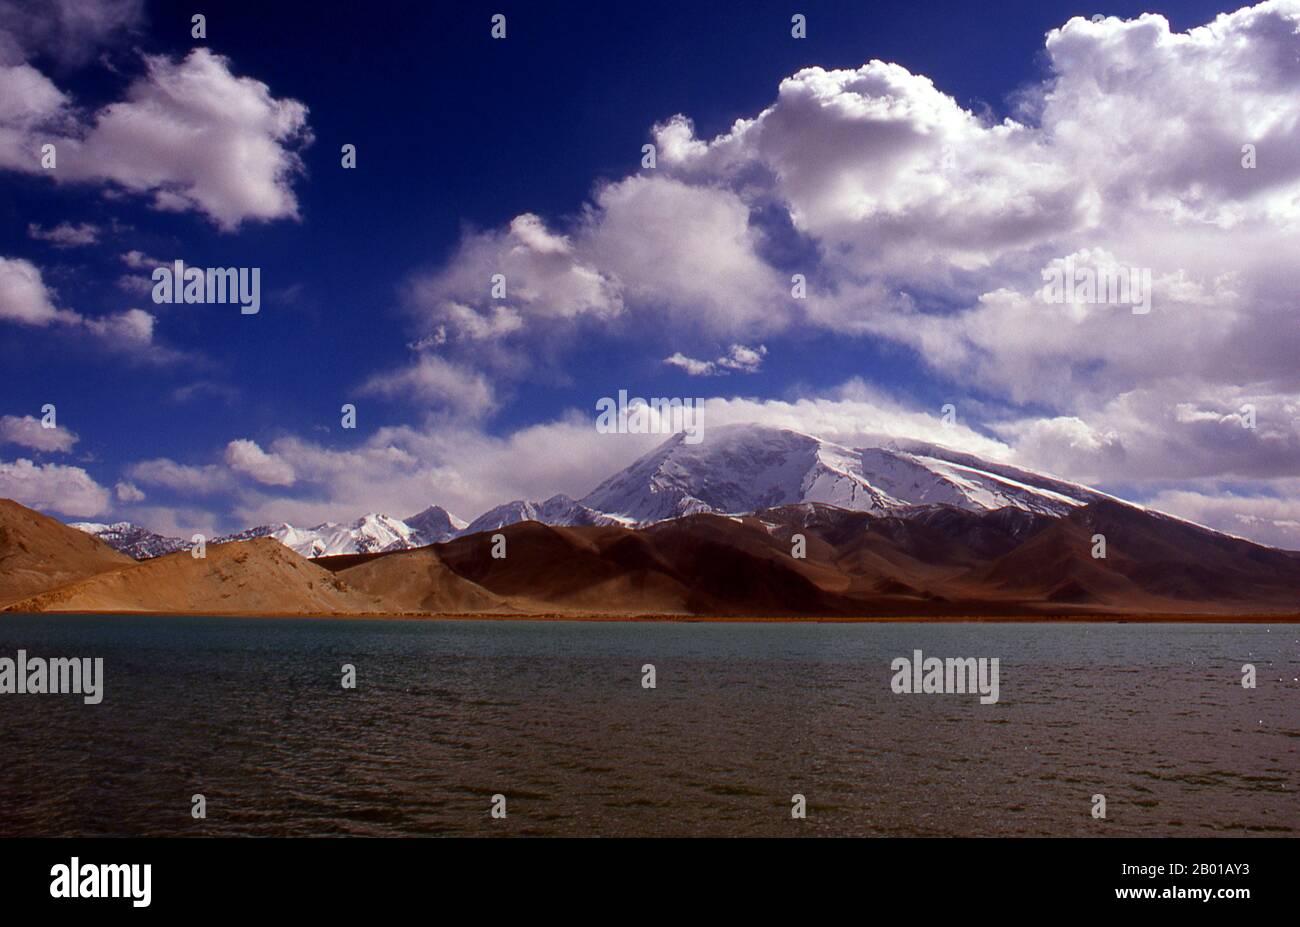 Cina: Muztagh ATA (Ice Mountain Padre) accanto al Lago Karakul sulla Karakoram Highway, Xinjiang. Muztagh ATA, o Muztagata (Uyghur: 'Padre di montagna di ghiaccio'), è il secondo più alto (7546 metri) delle montagne che formano il bordo settentrionale dell'altopiano tibetano (non il secondo più alto delle montagne dell'altopiano tibetano). A volte è considerato come parte del Kunlun Shan, anche se fisicamente è più strettamente collegato ai Pamirs. Si presume inoltre che sia una delle vette più facili da scalare di 7.000 m del mondo, a causa del suo dolce pendio occidentale e del tempo relativamente più secco. Foto Stock